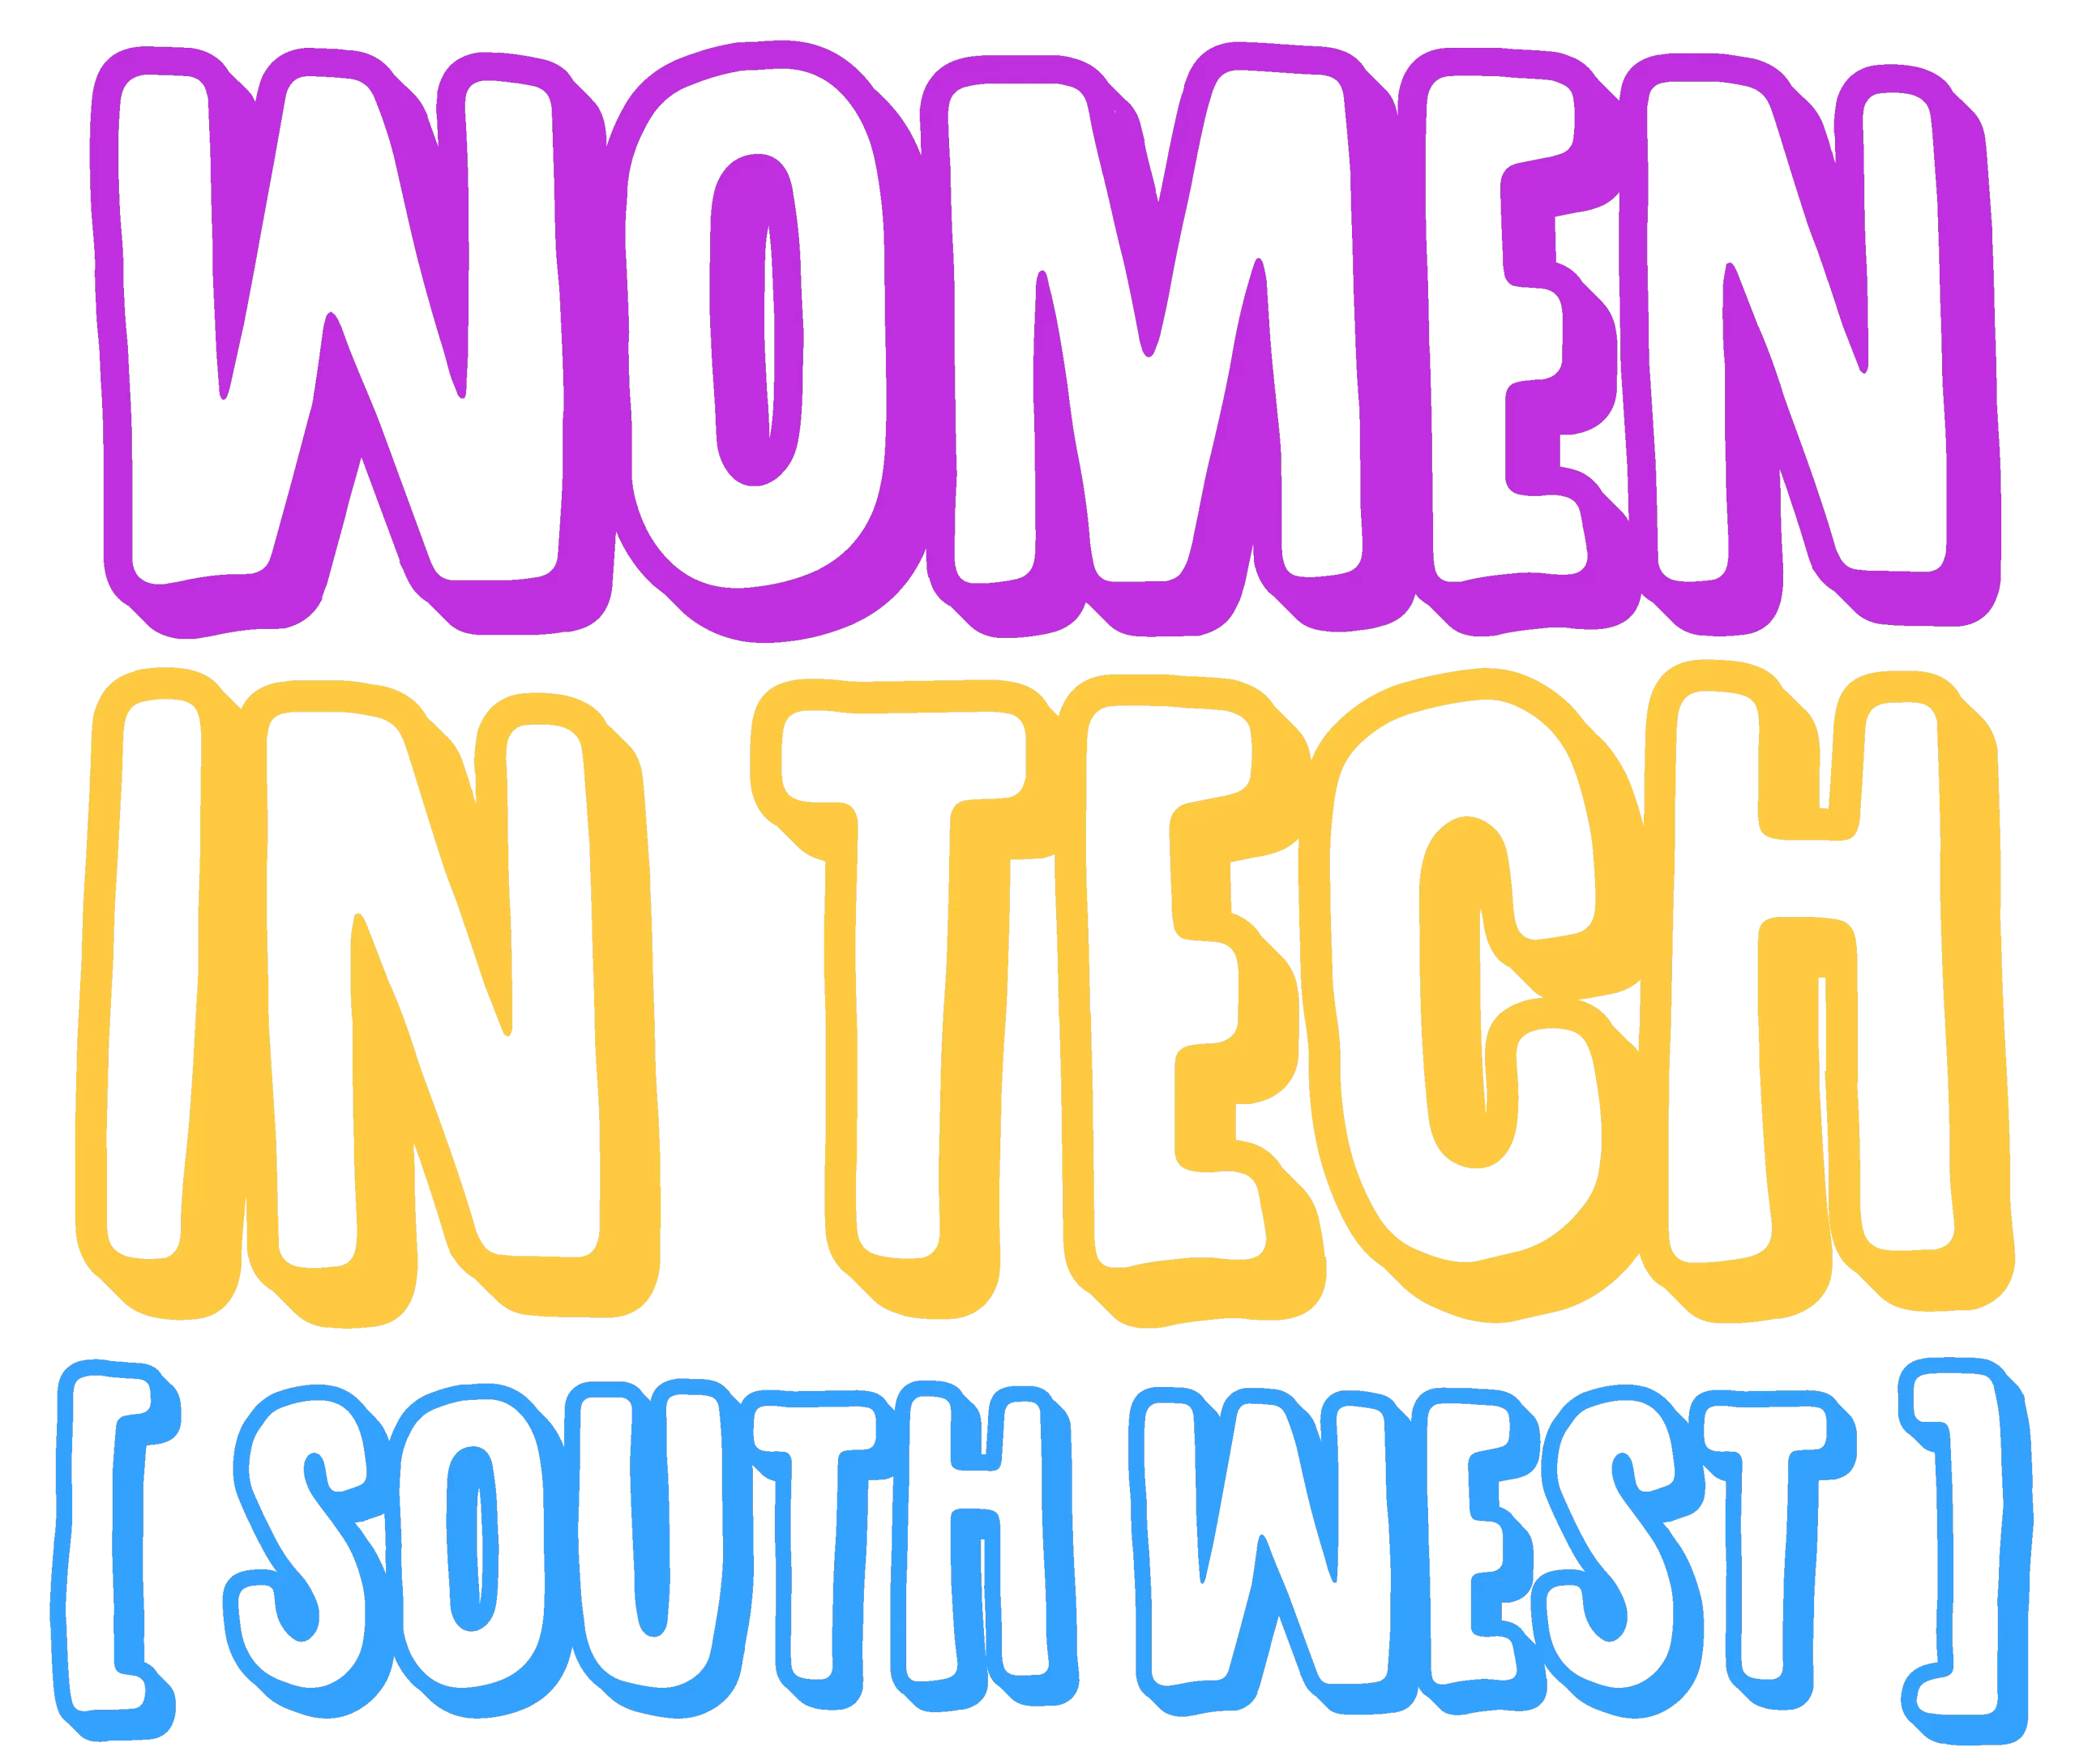 Women in Tech South West